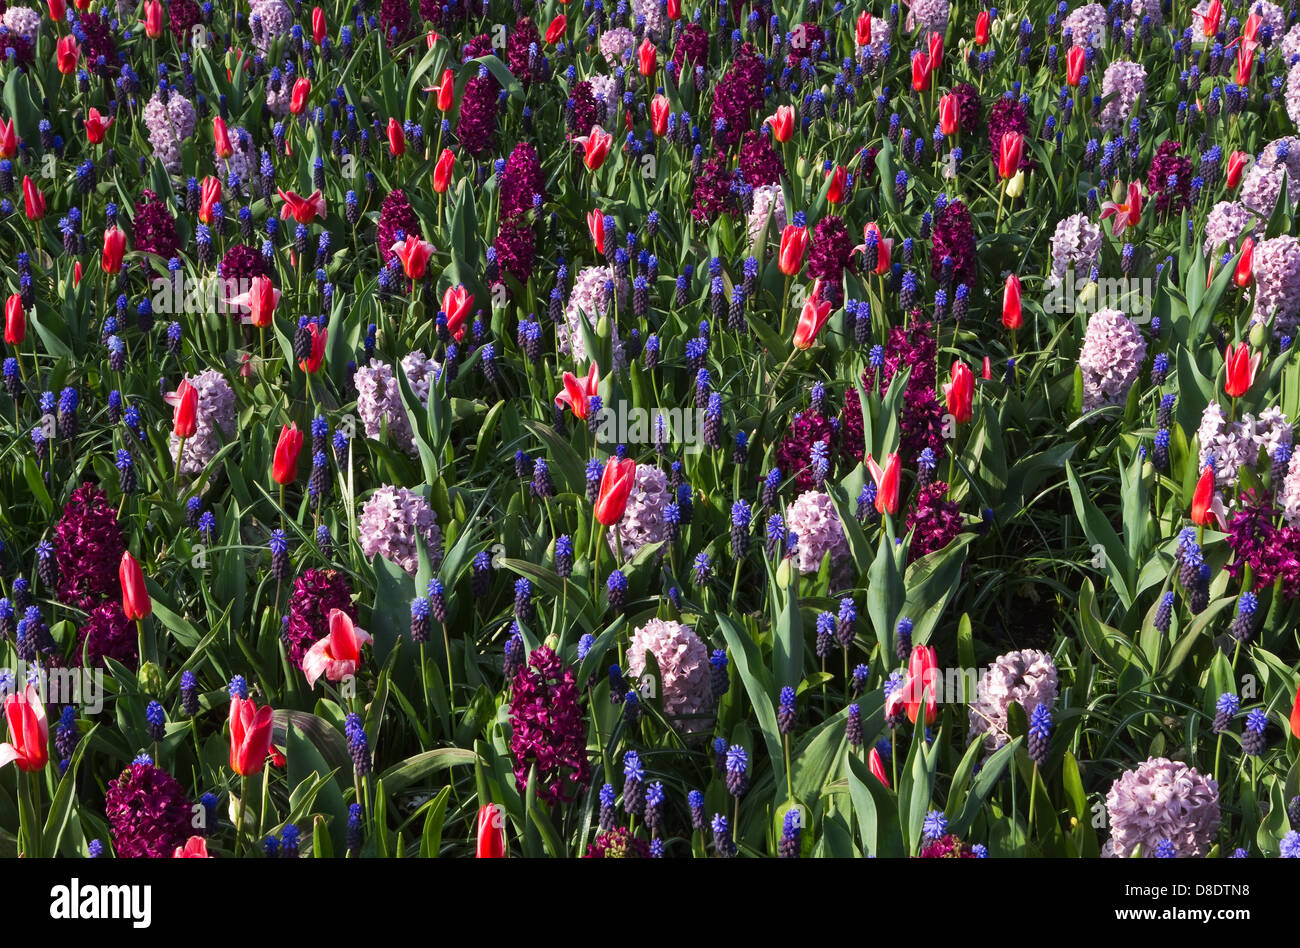 Hintergrund des Frühlings Blumen - Tulpen, Hyazinthen und Trauben Hyazinthen in kühlen Farben Stockfoto